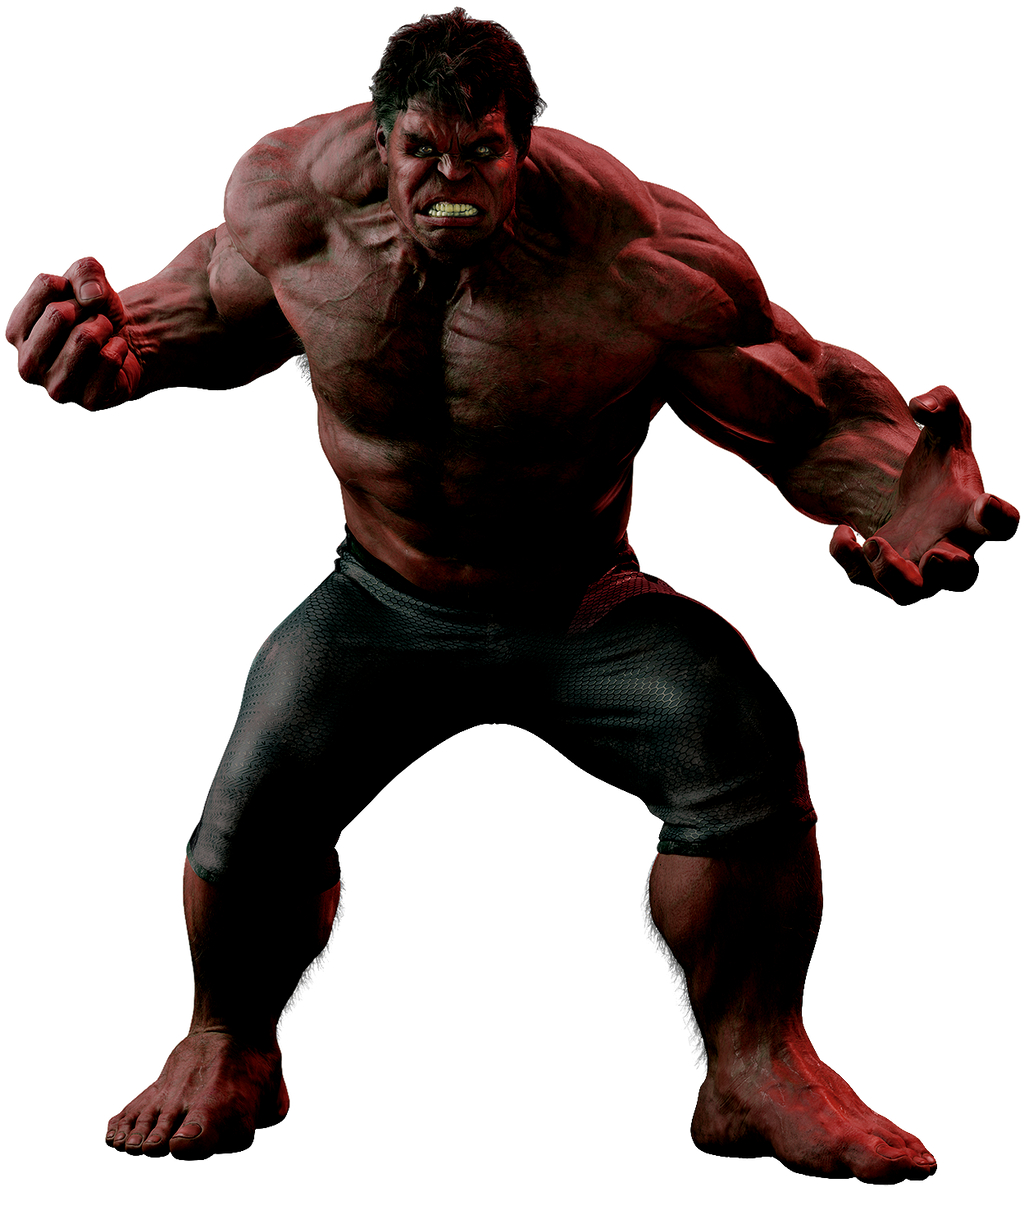 Red Hulk by cptcommunist on DeviantArt